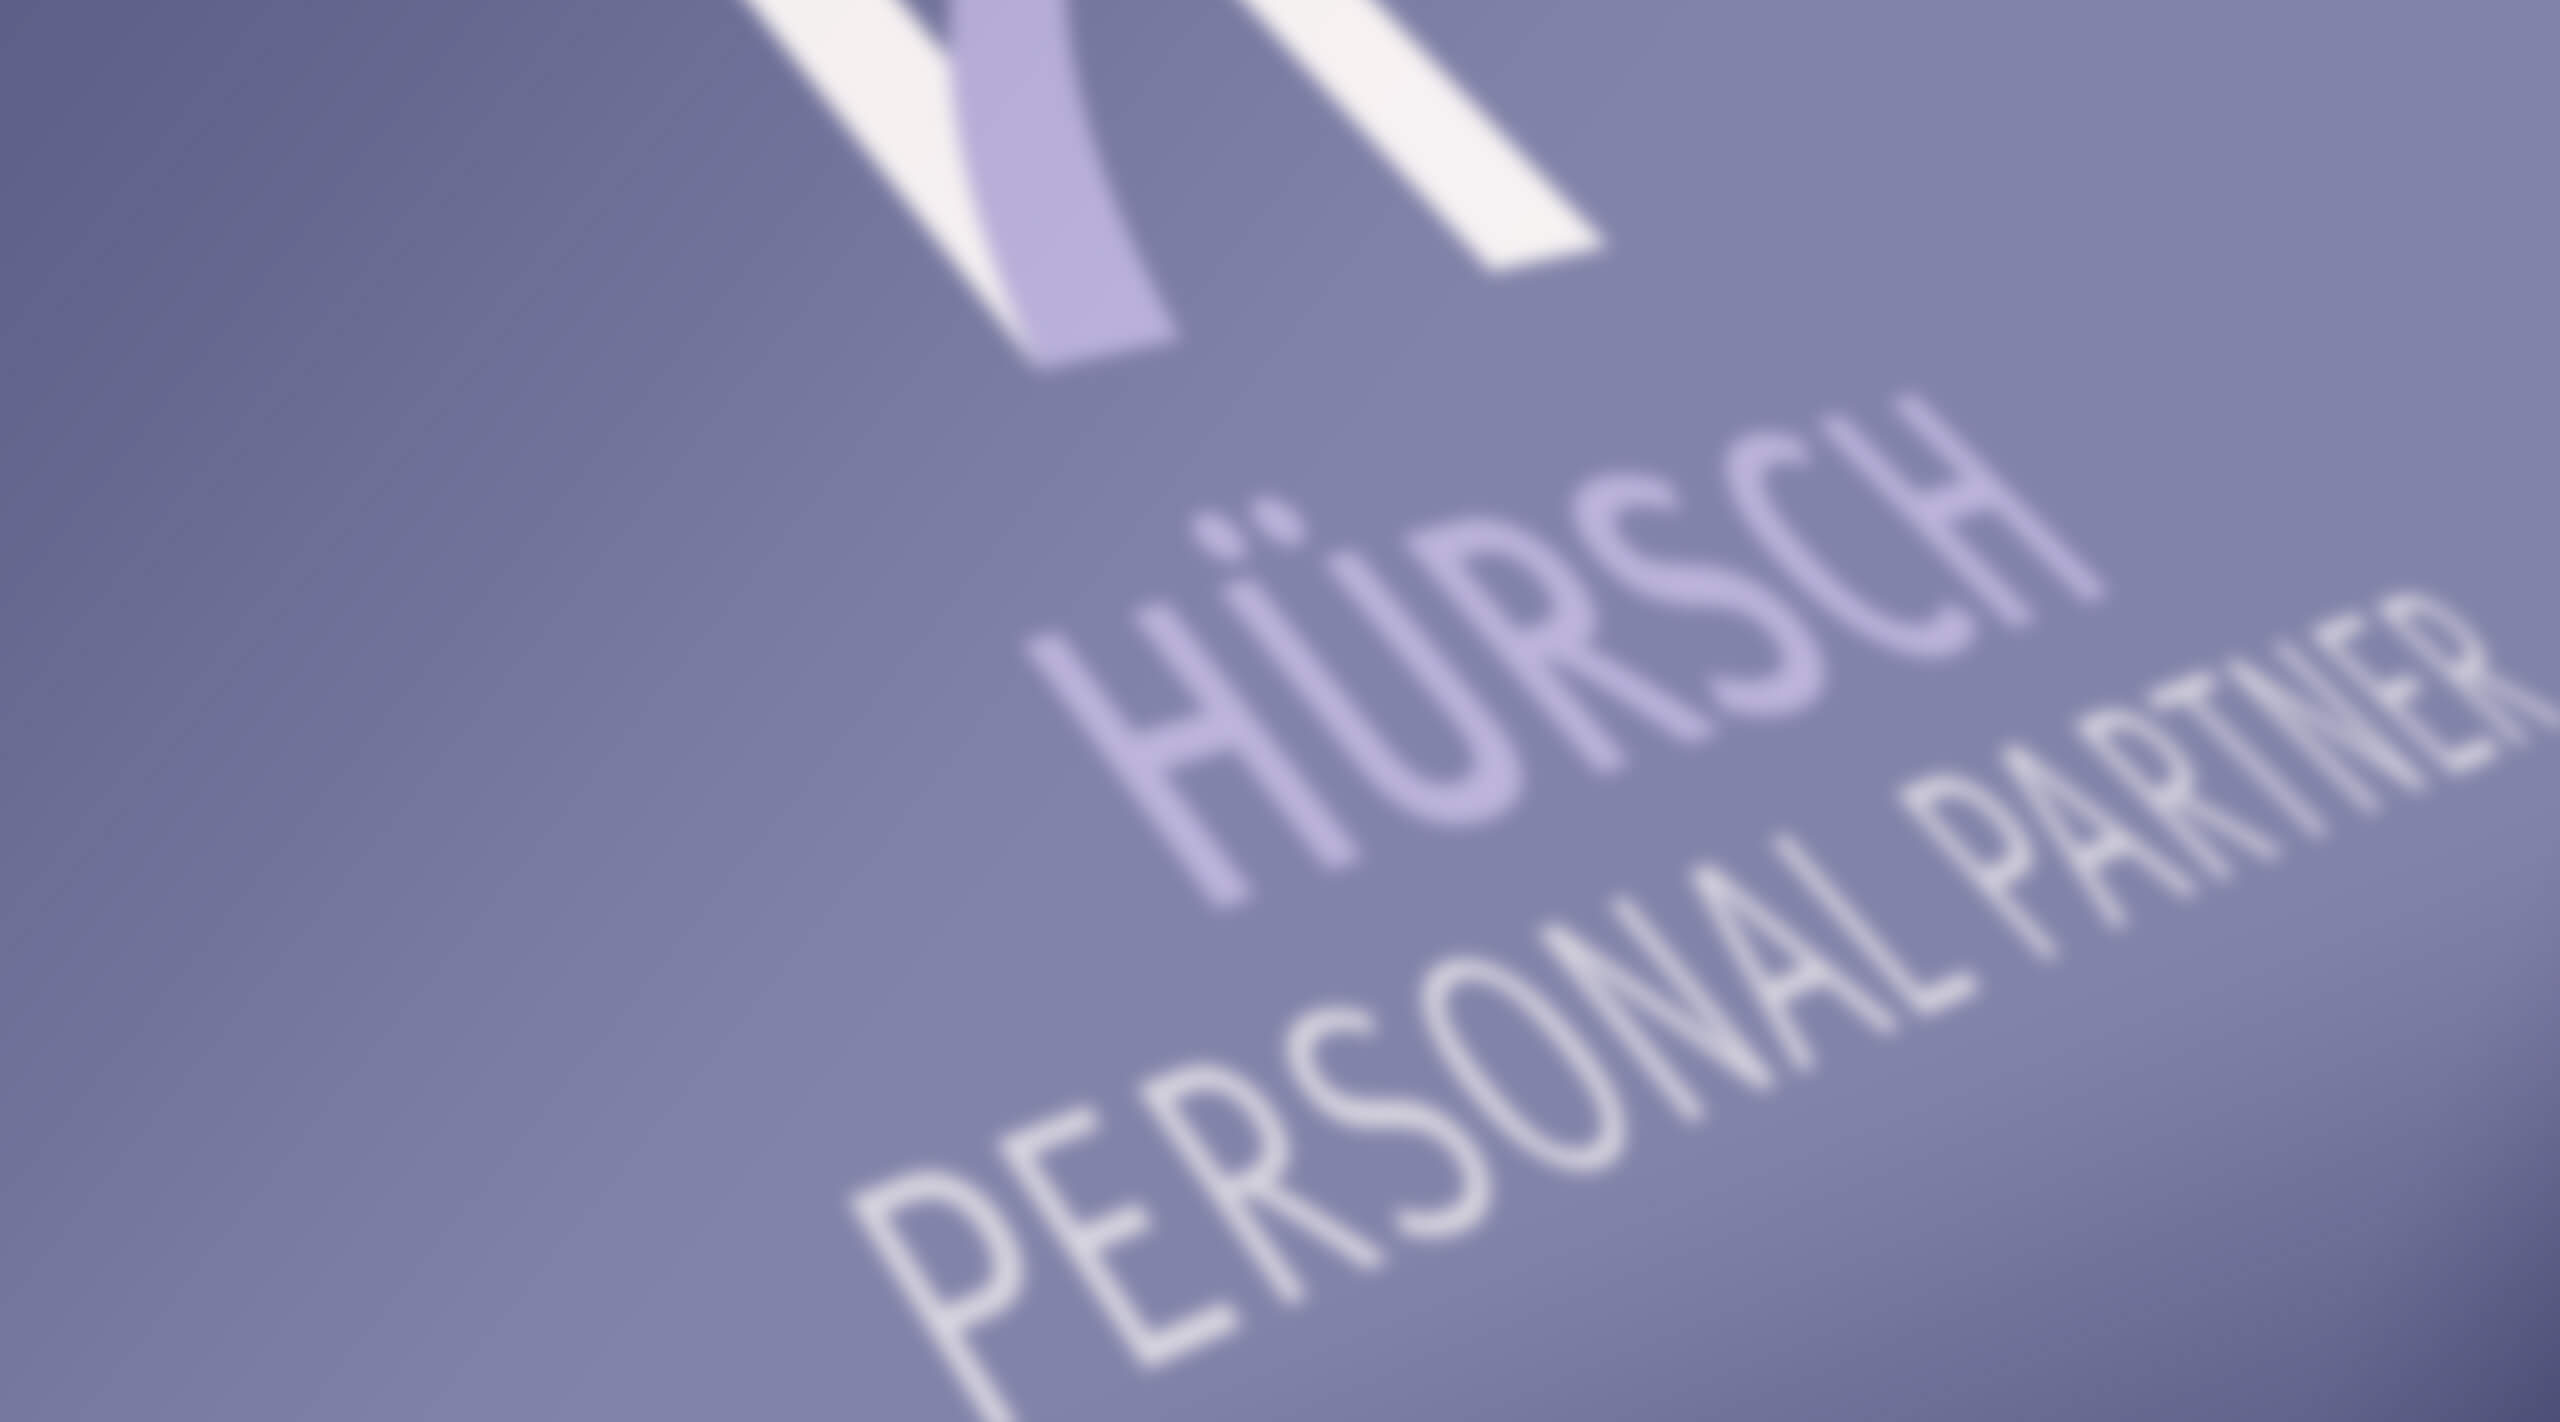 Hürsch Personal GmbH